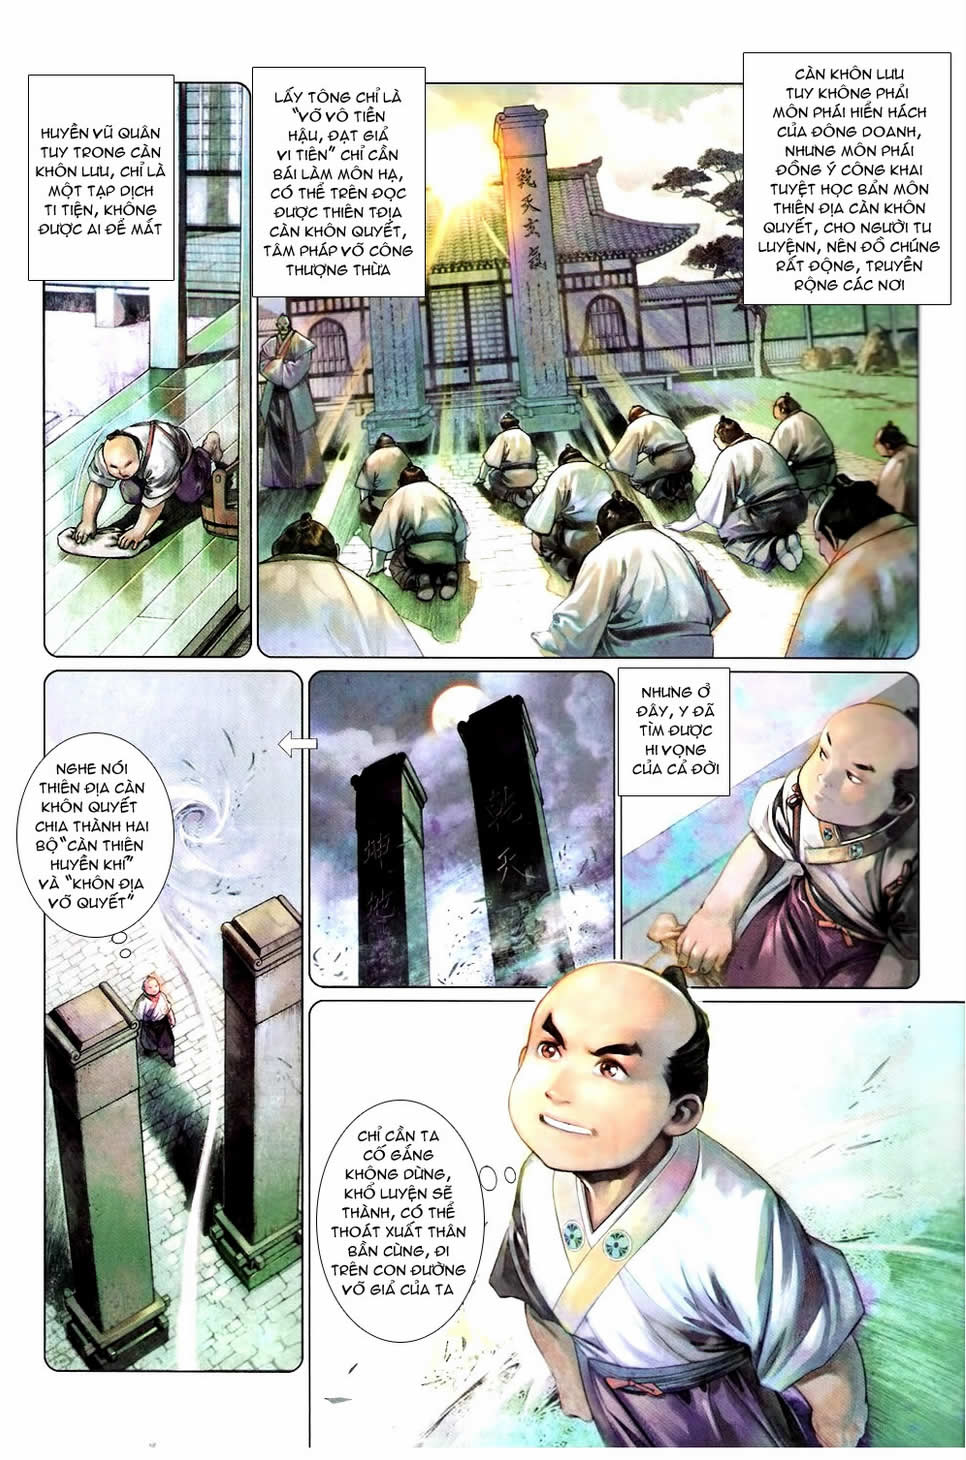 Phong Vân chap 588 trang 15